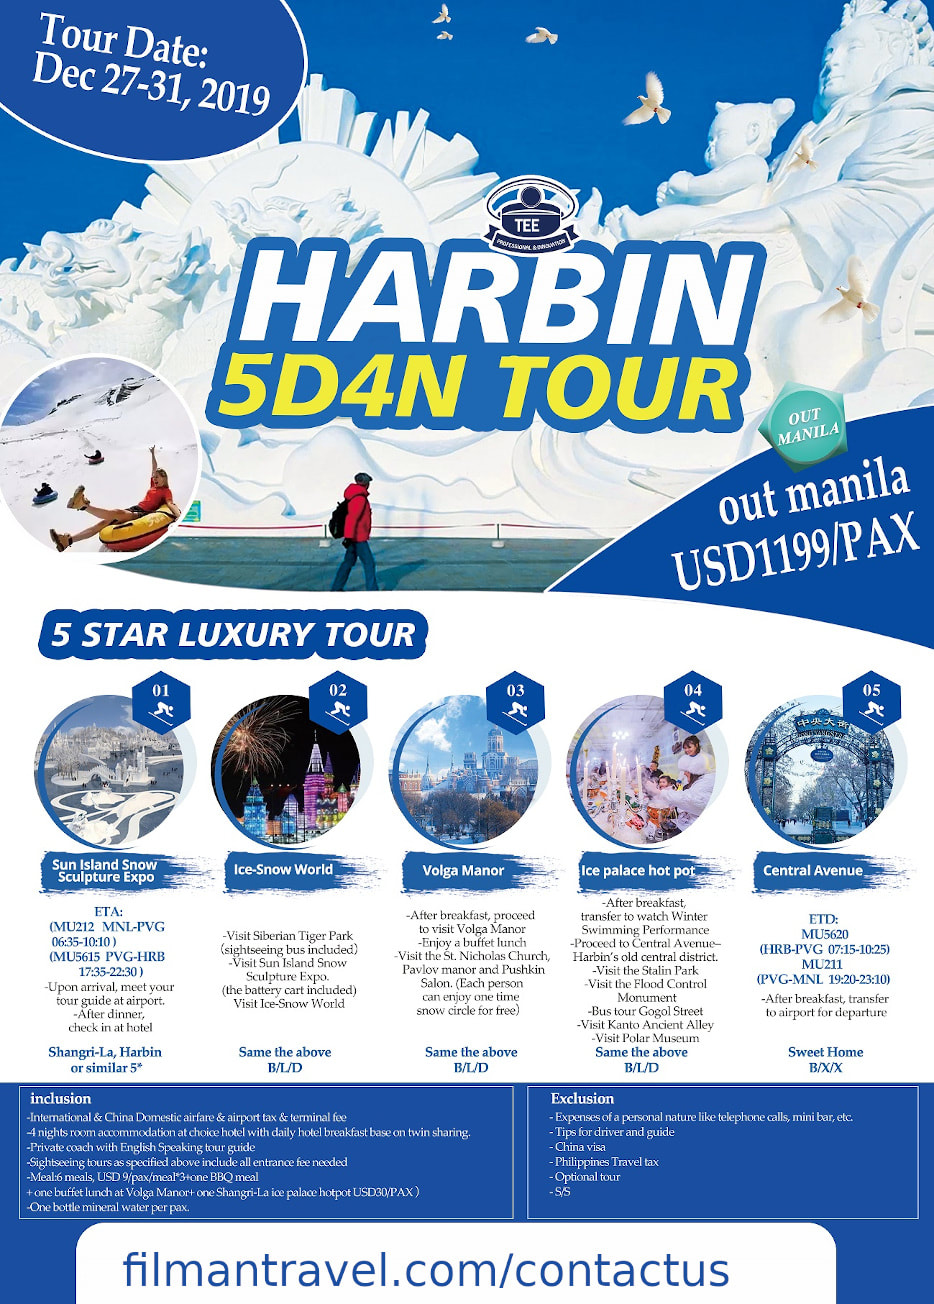 harbin 5 days tour package dec 27 flyer image 